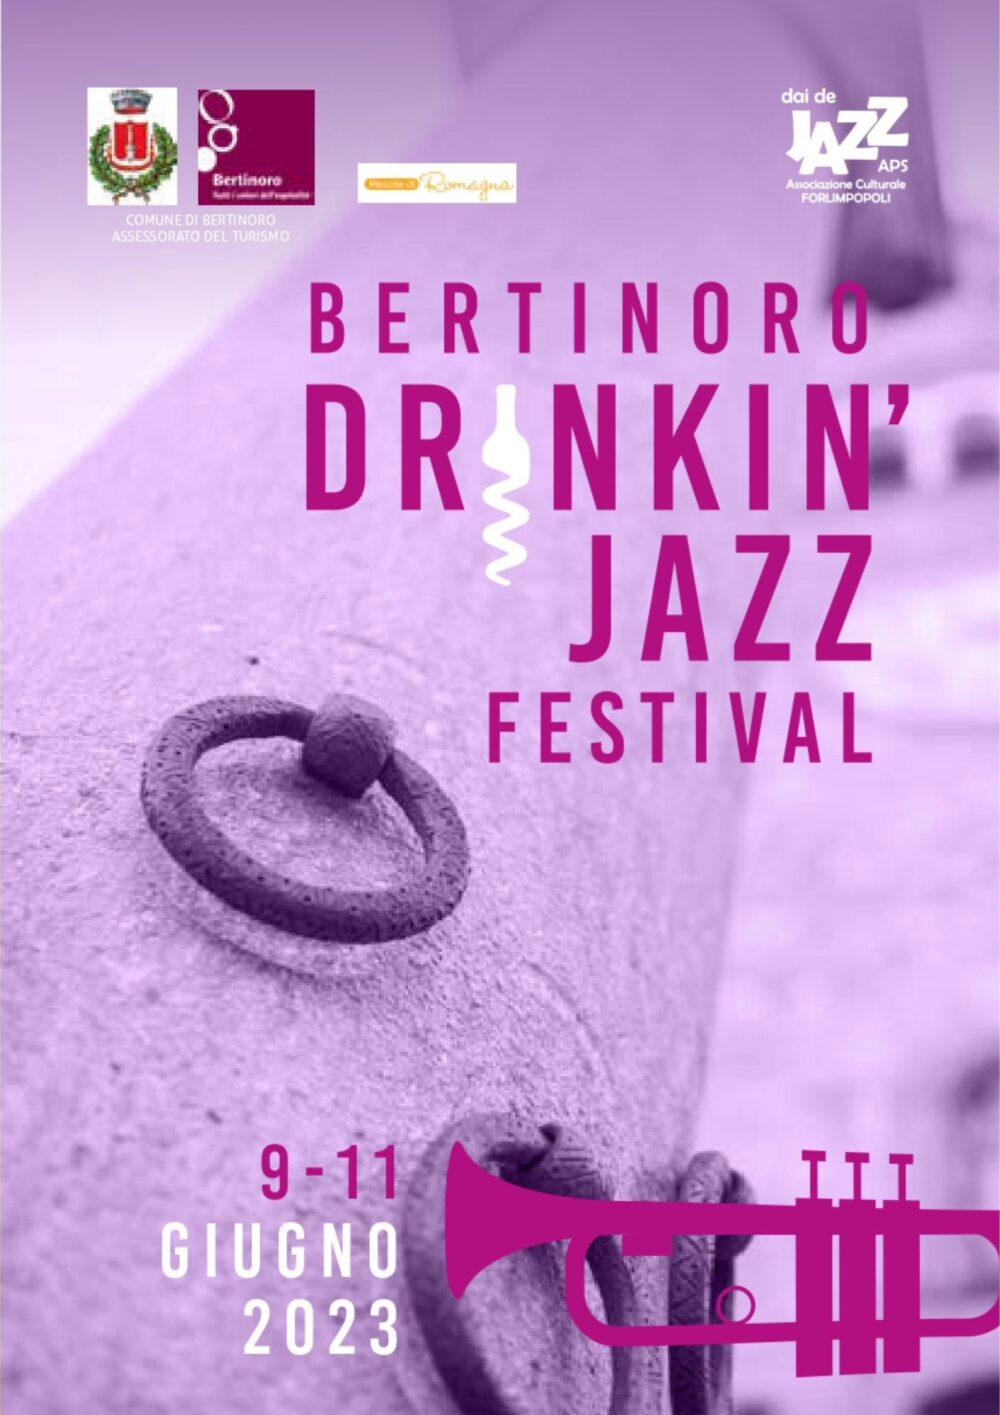 Bertinoro DRINKIN' JAZZ Festival